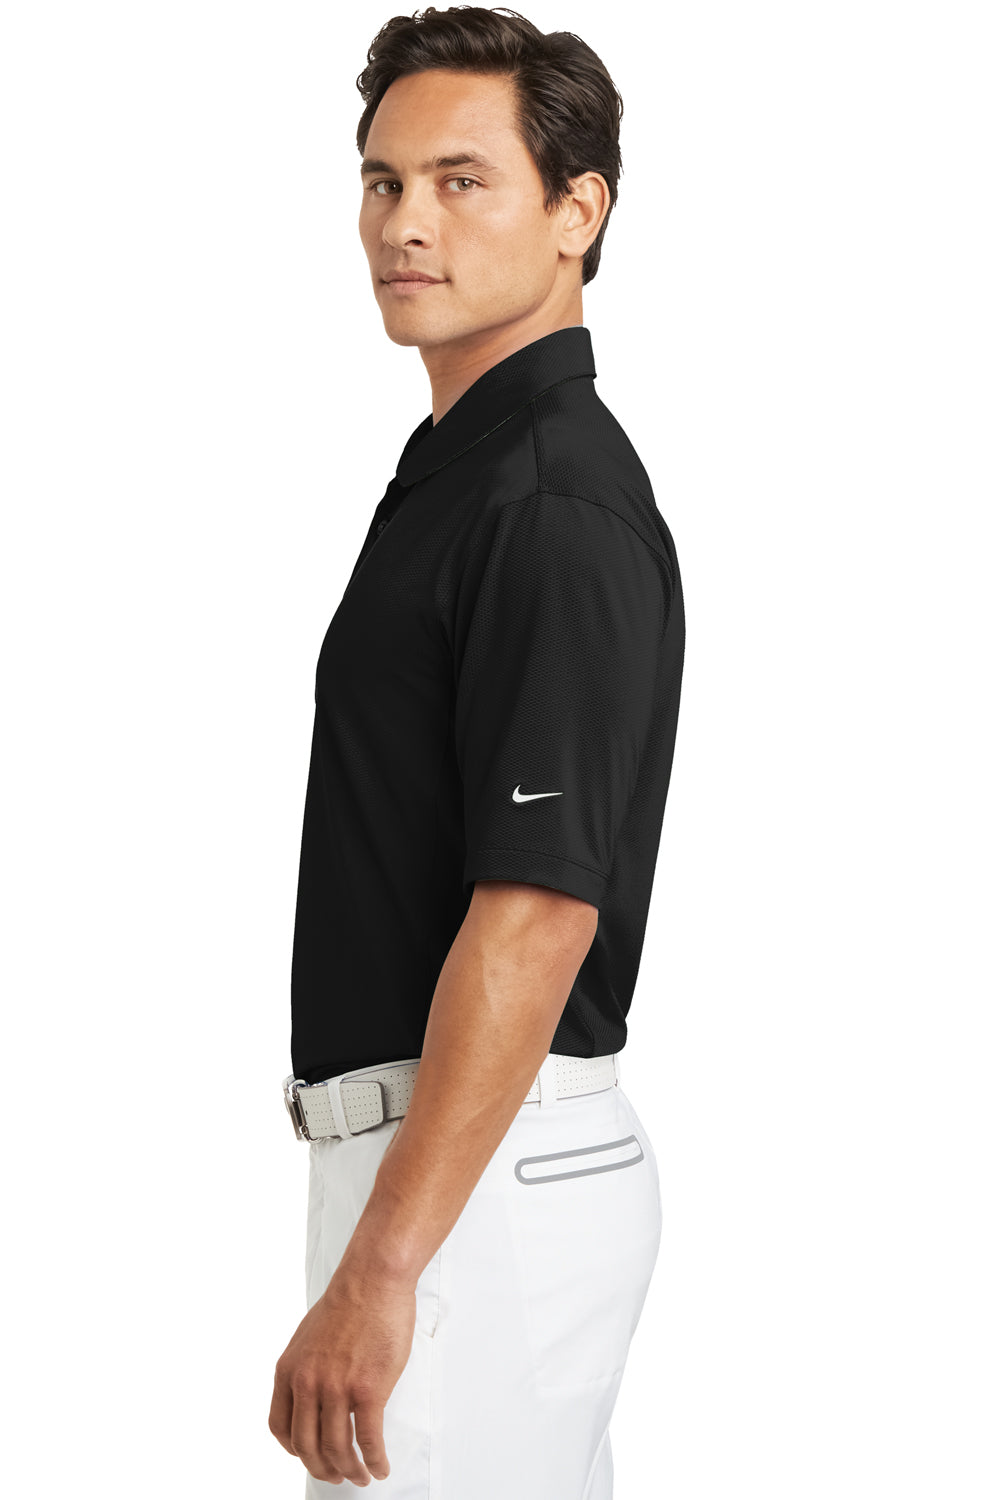 Nike 354055 Mens Sphere Dry Moisture Wicking Short Sleeve Polo Shirt Black Side